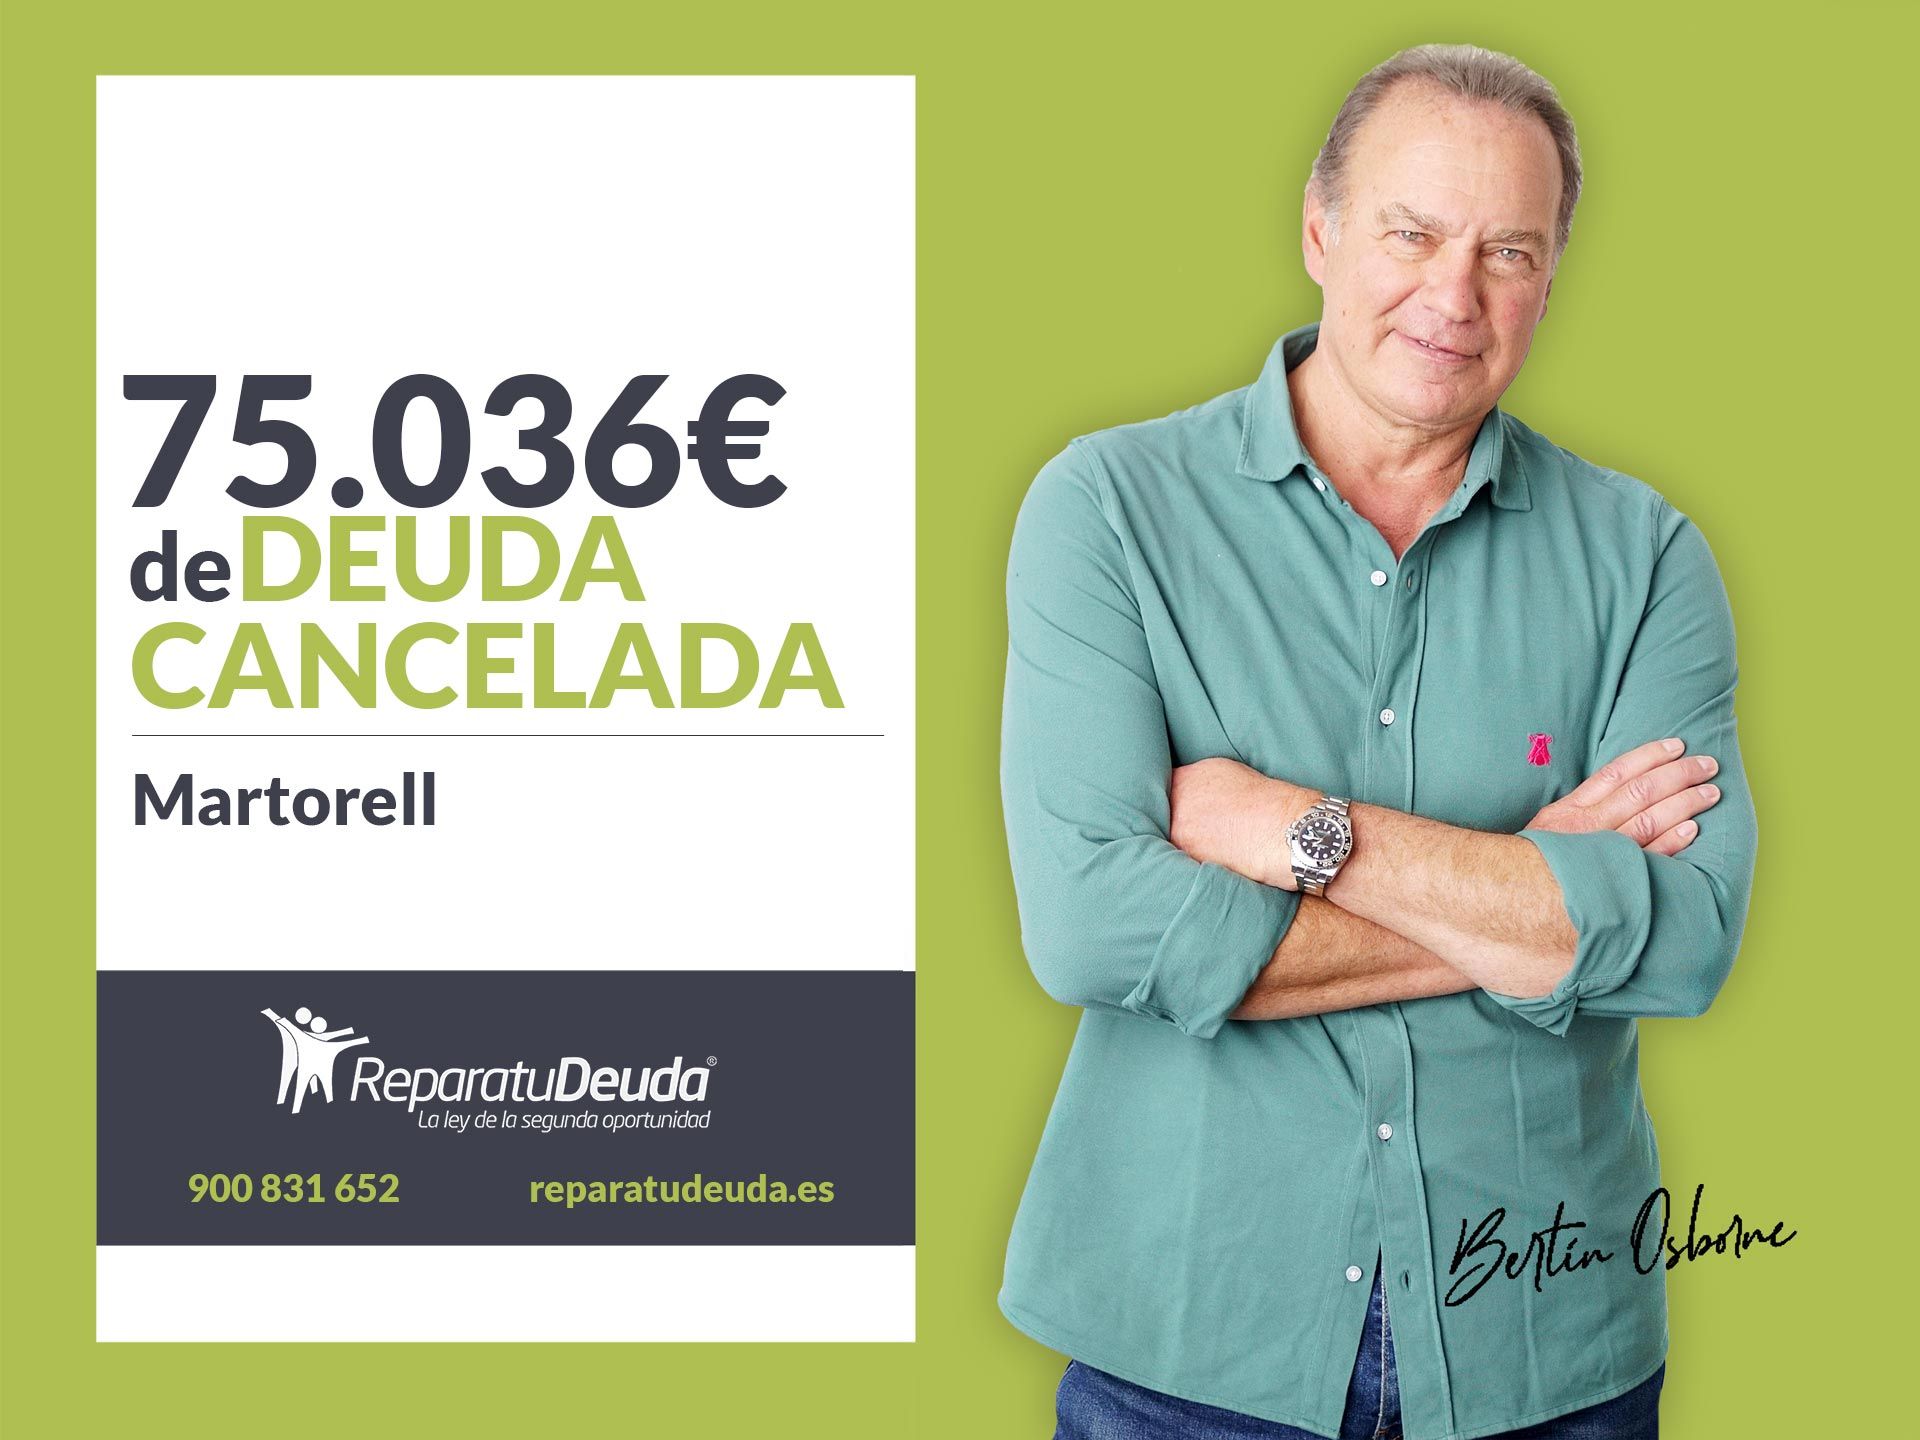 Repara tu Deuda Abogados cancela 75.036 ? en Martorell (Barcelona) con la Ley de Segunda Oportunidad